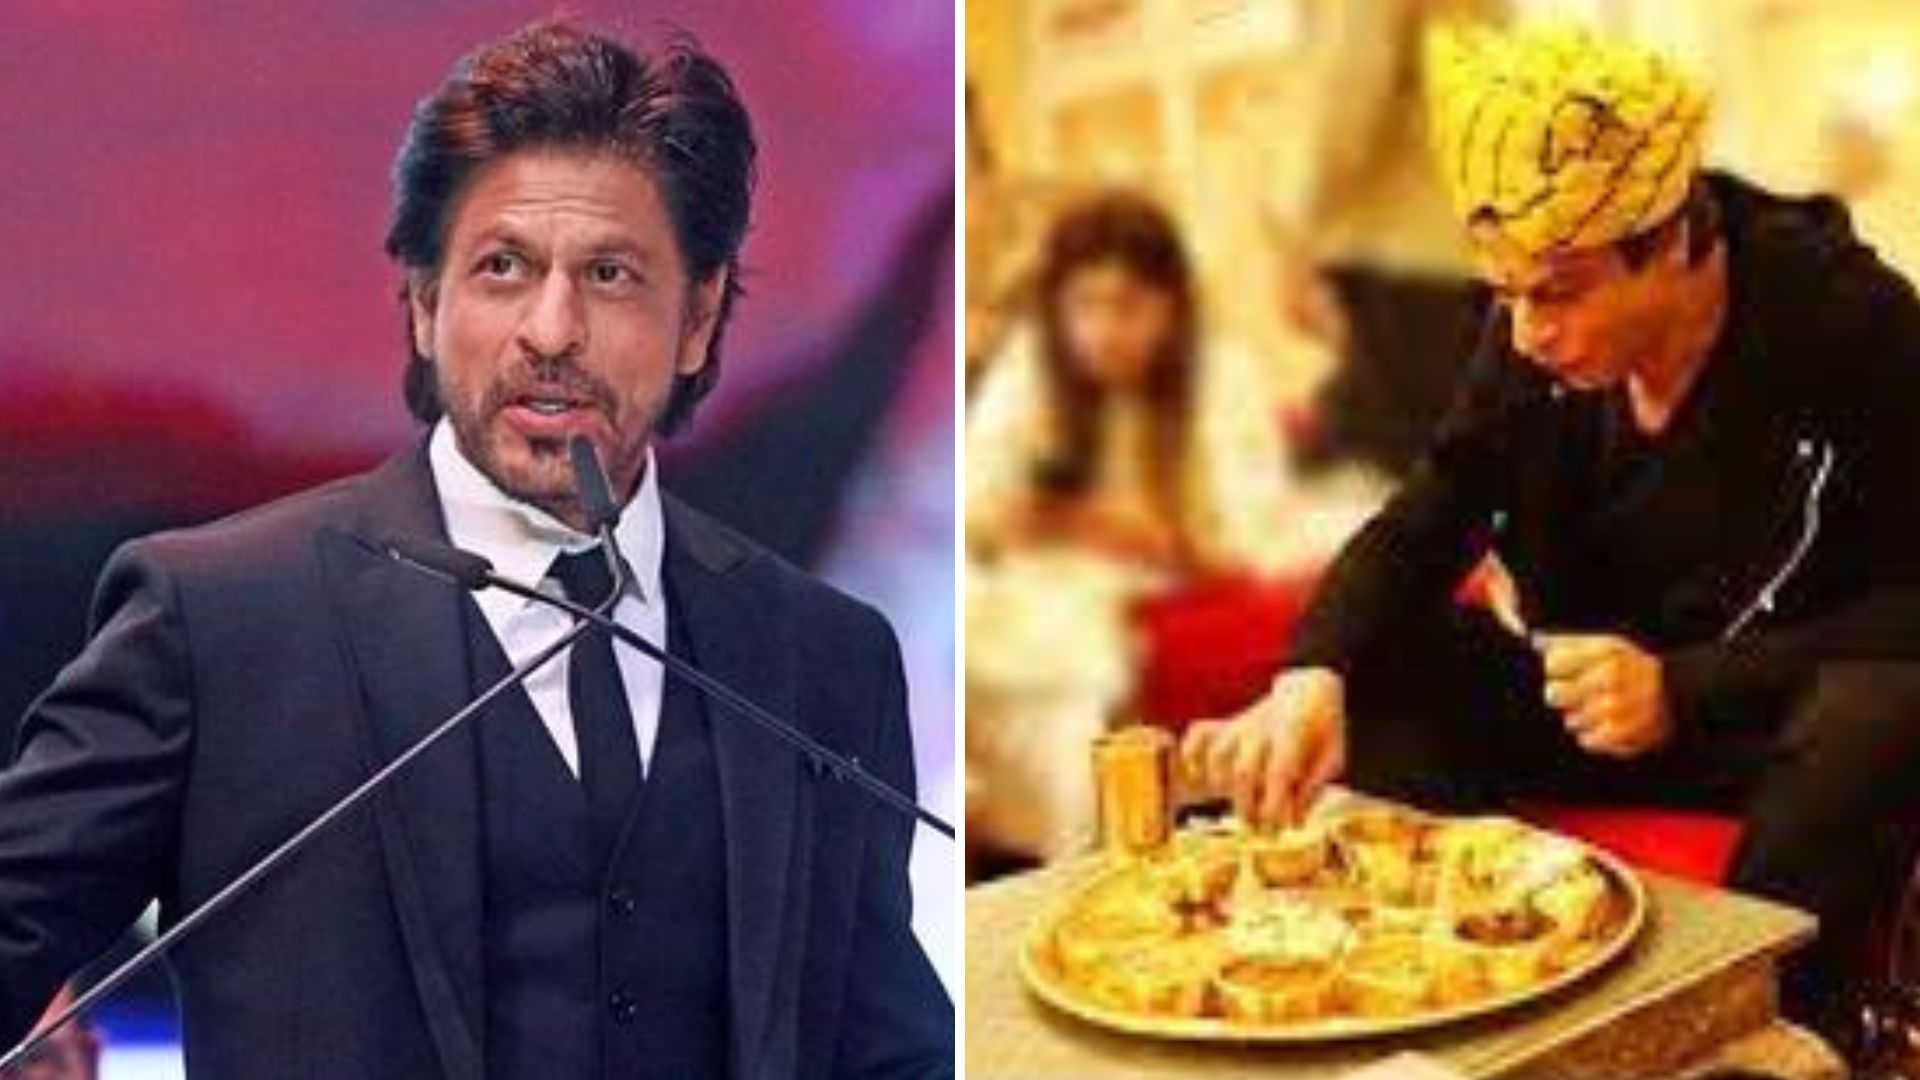 शाहरुख खान फ्यूचर में खोलेंगे 'पठान केटरिंग'? बोले- कोविड में खाना बनाना सीखा है